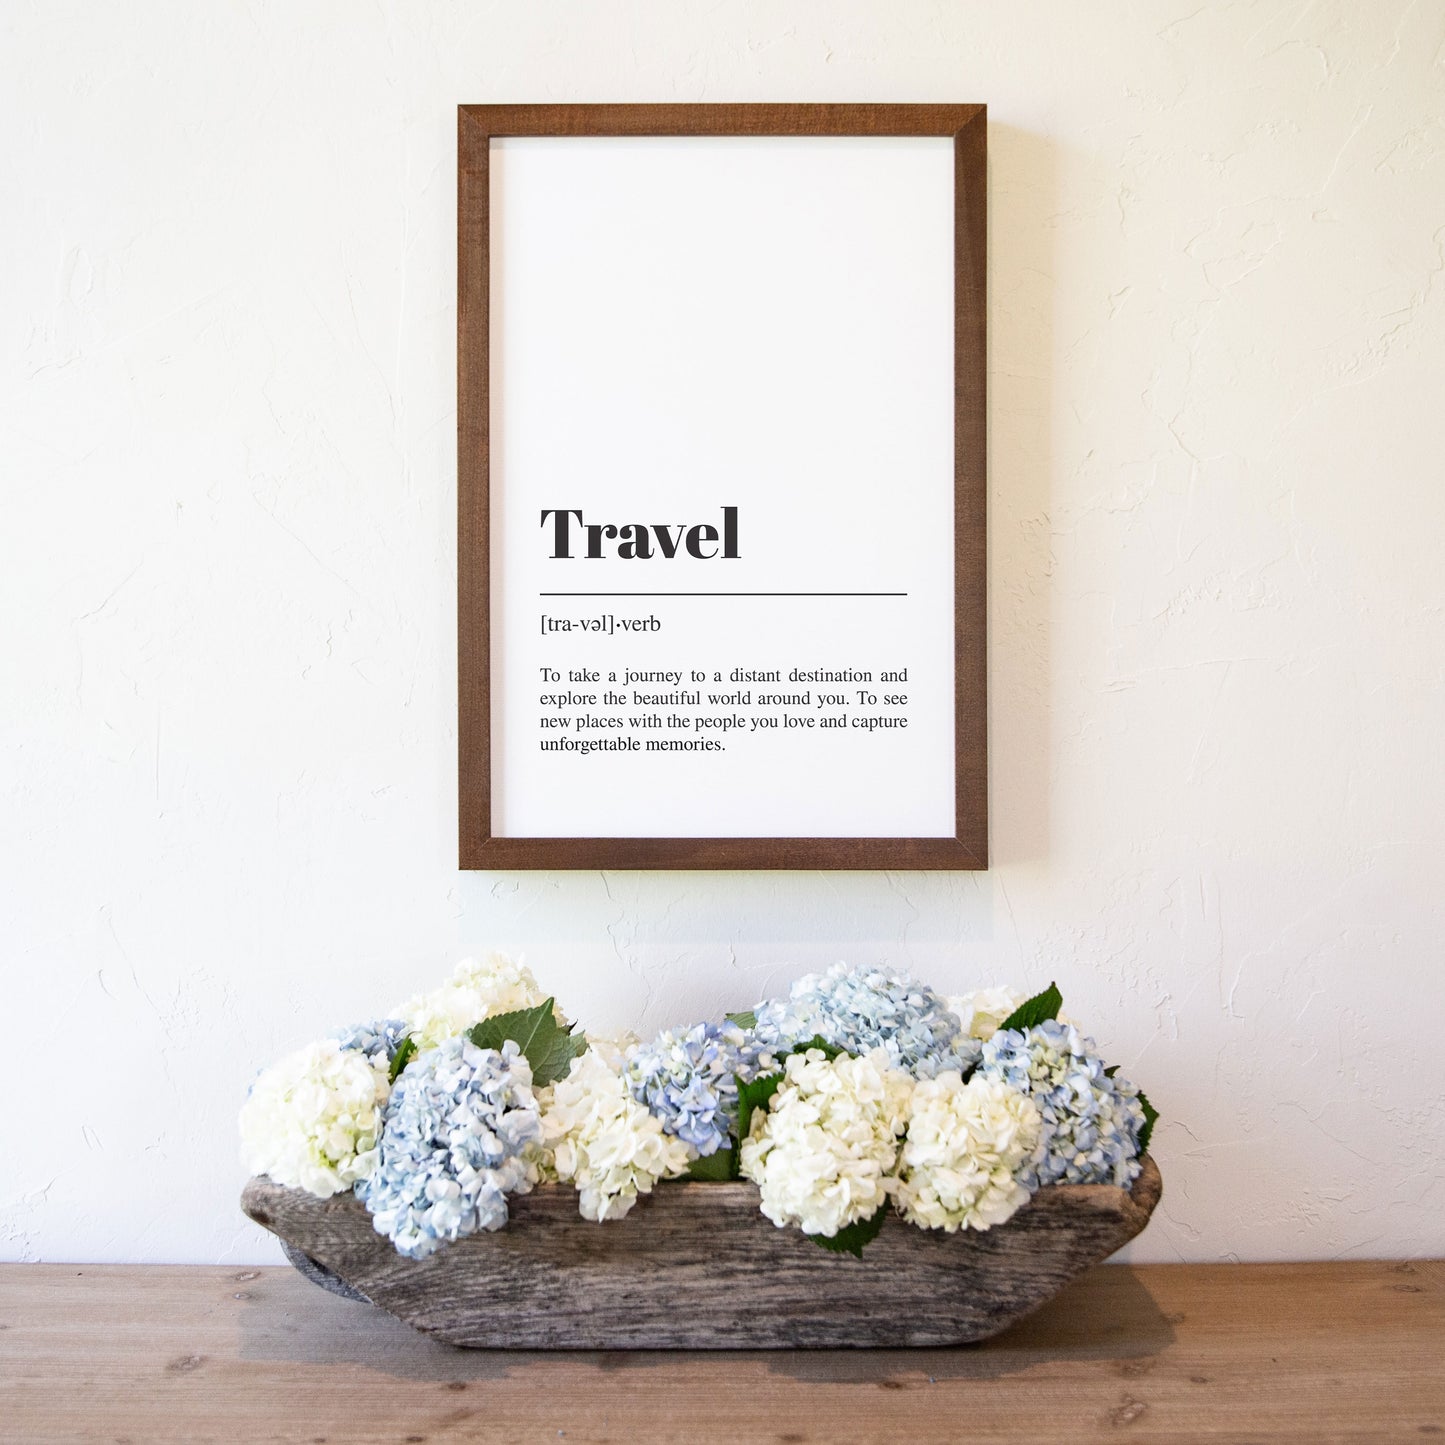 Smallwoods Framed Travel Word Art